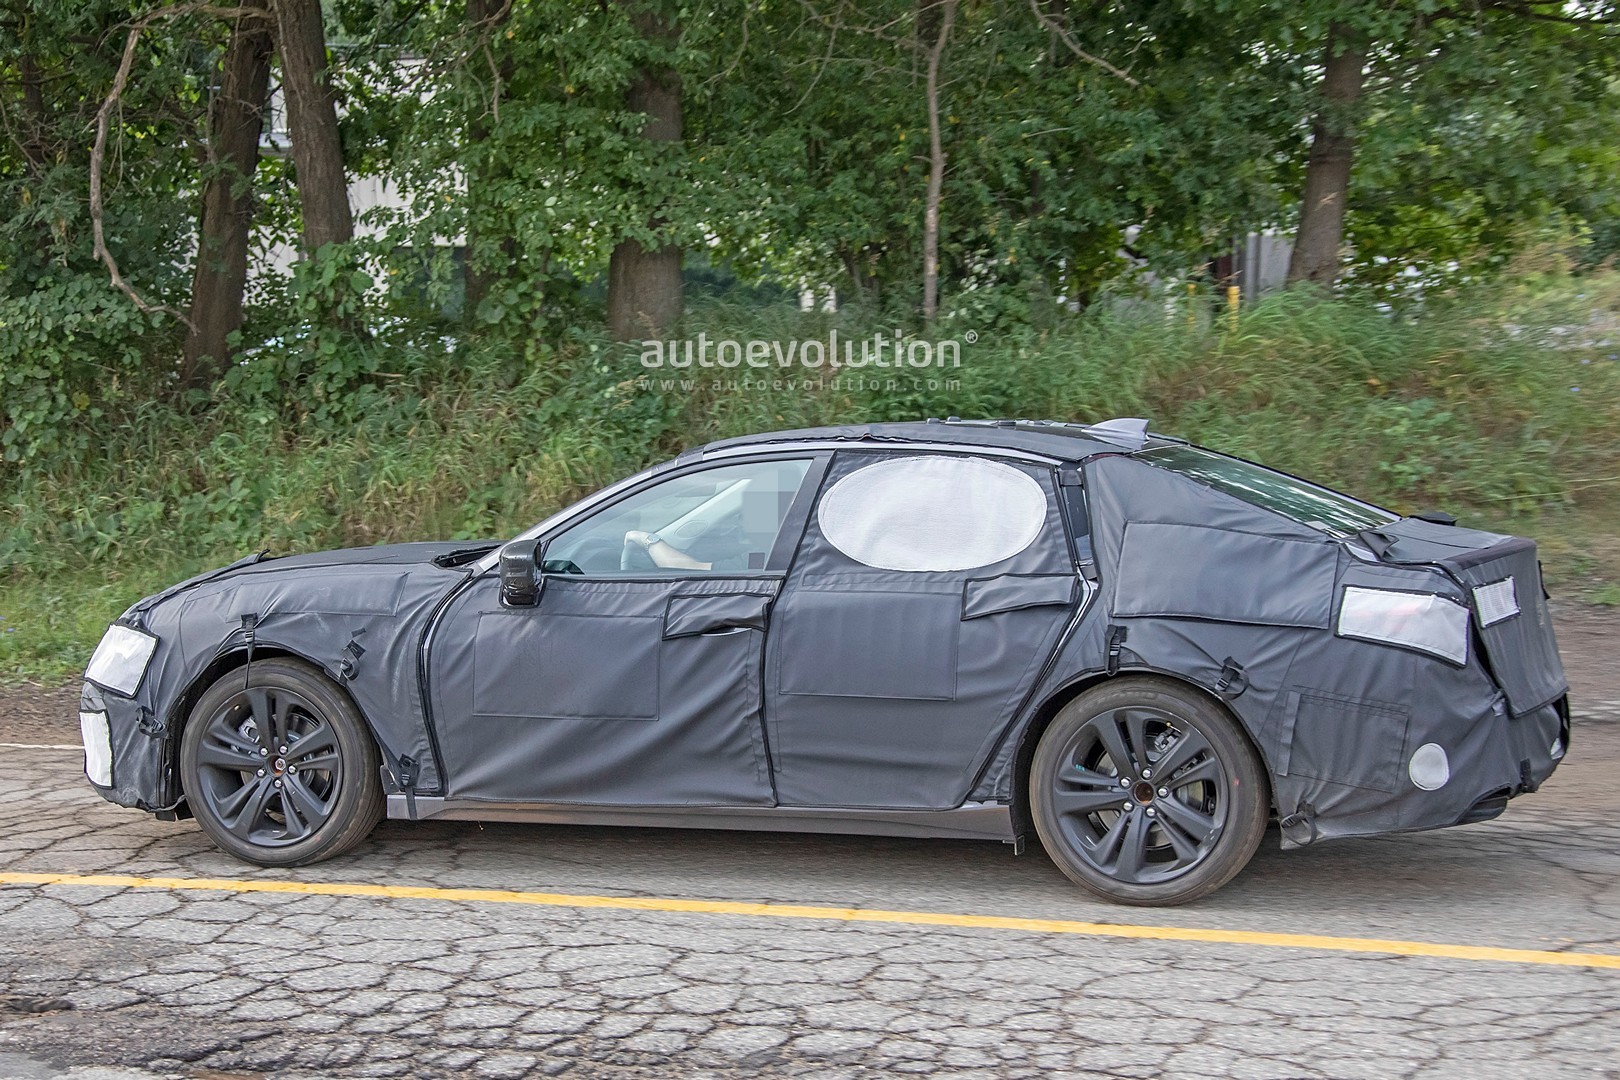 2021 Acura Tlx Sedan Spied Testing Looks Like Type S